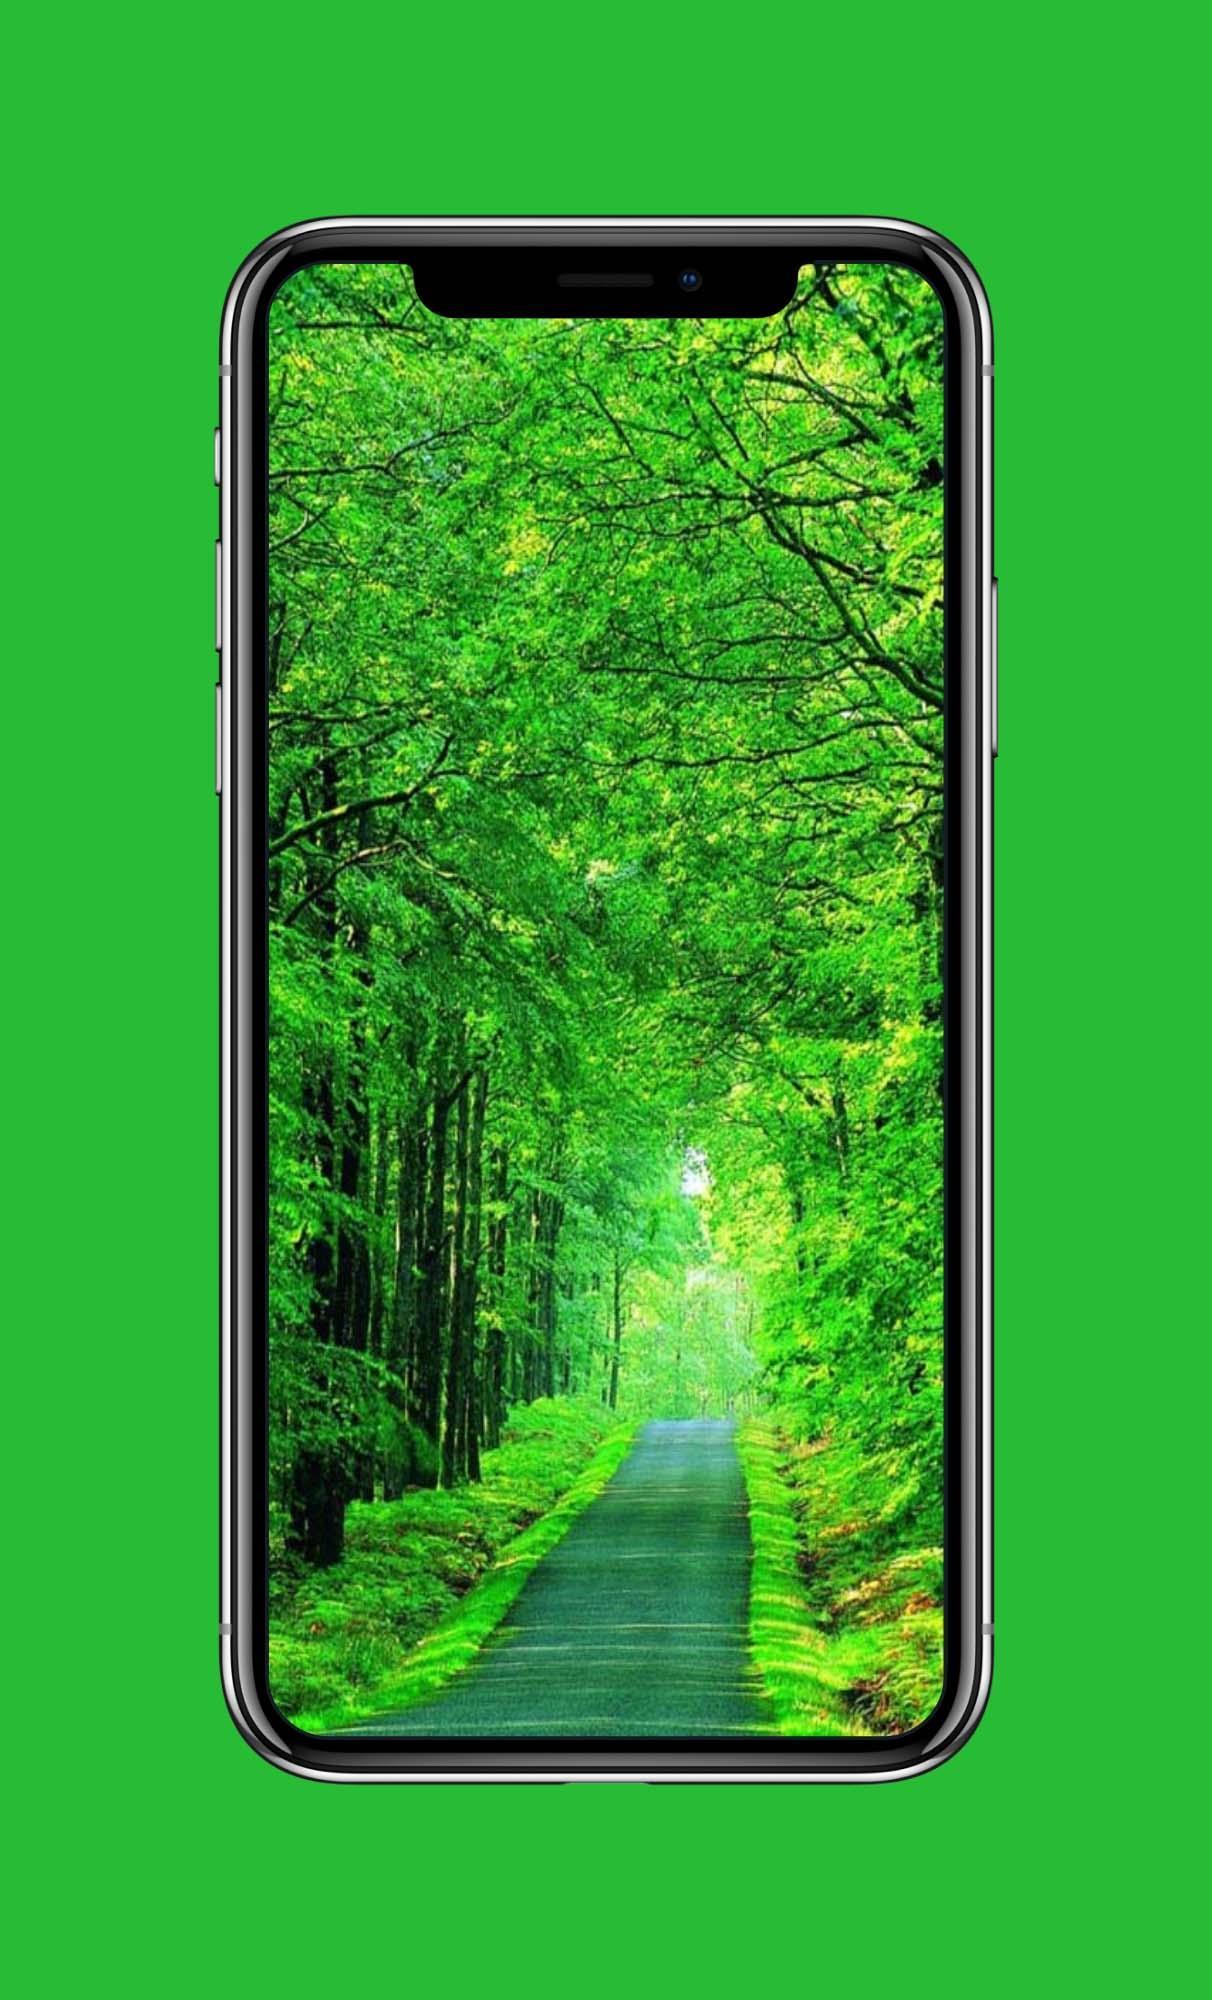 Android 用の 緑の壁紙 Apk をダウンロード